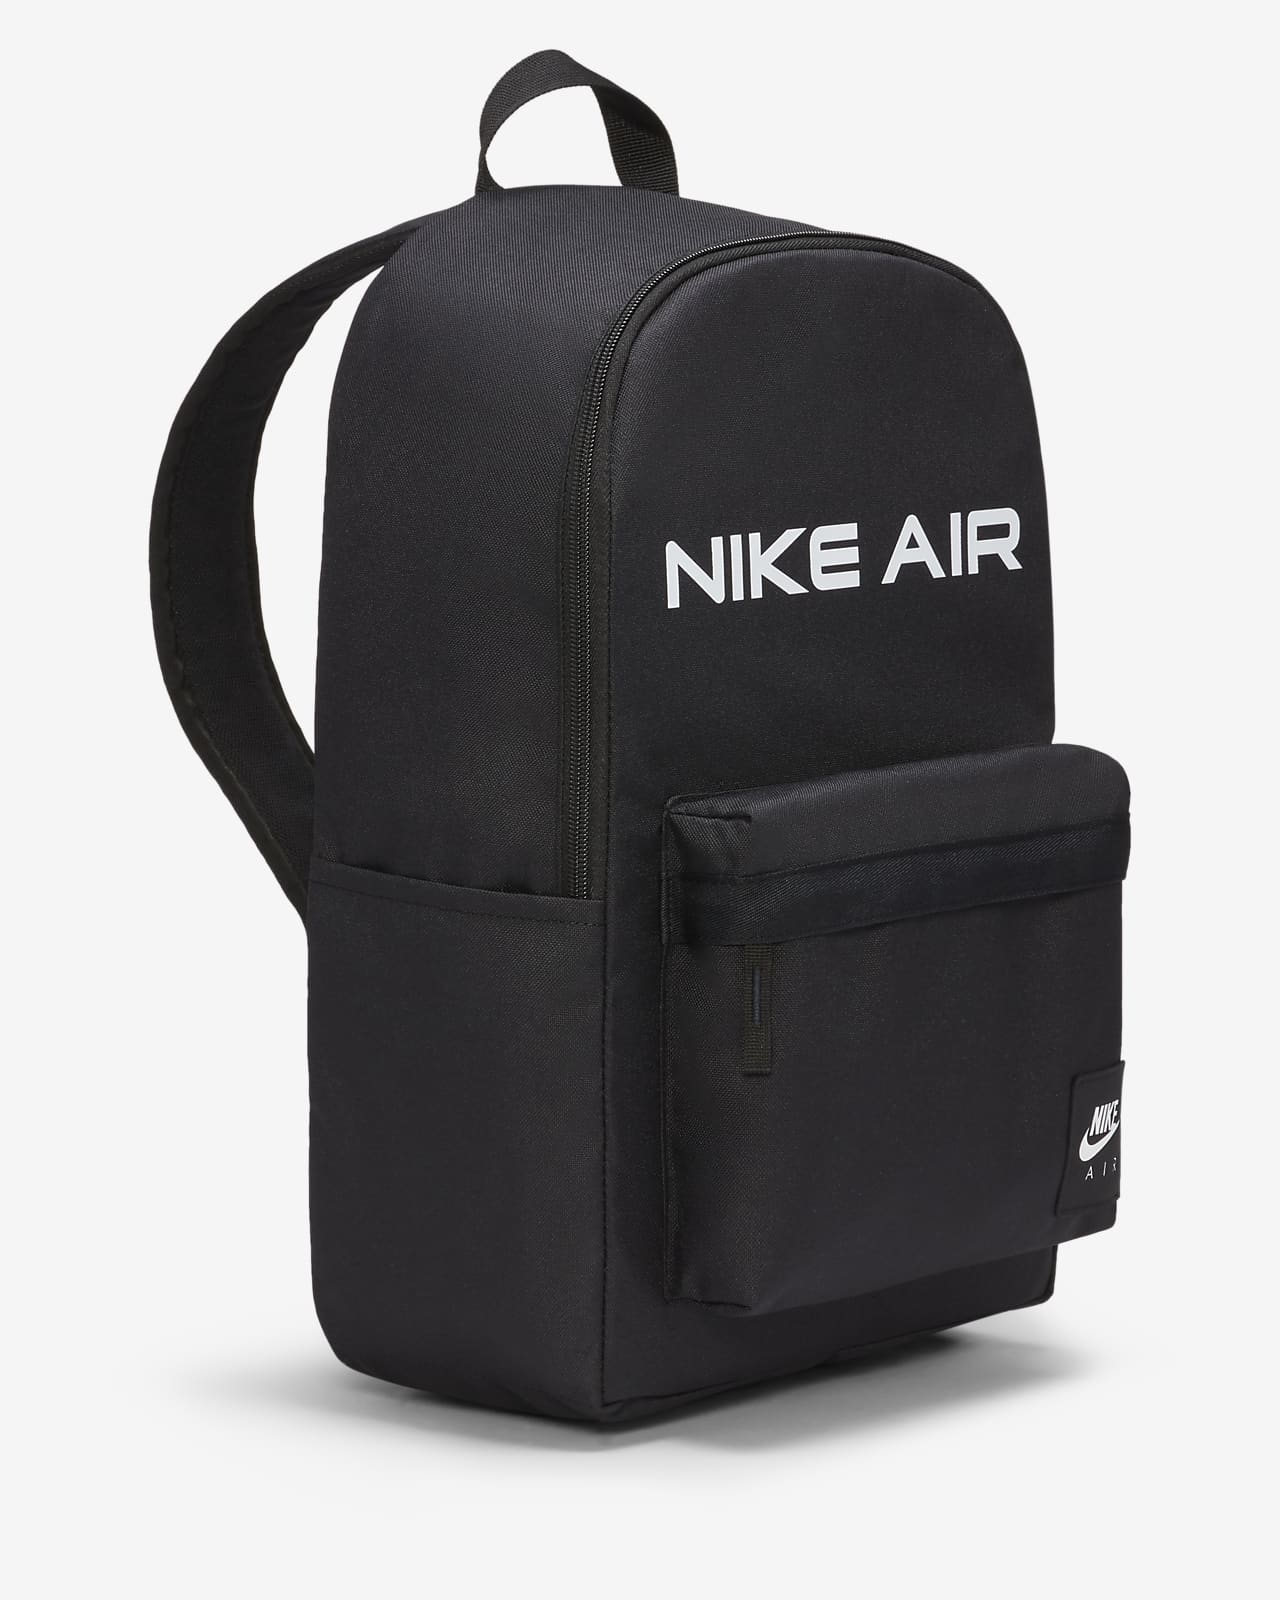 nike air backpack white